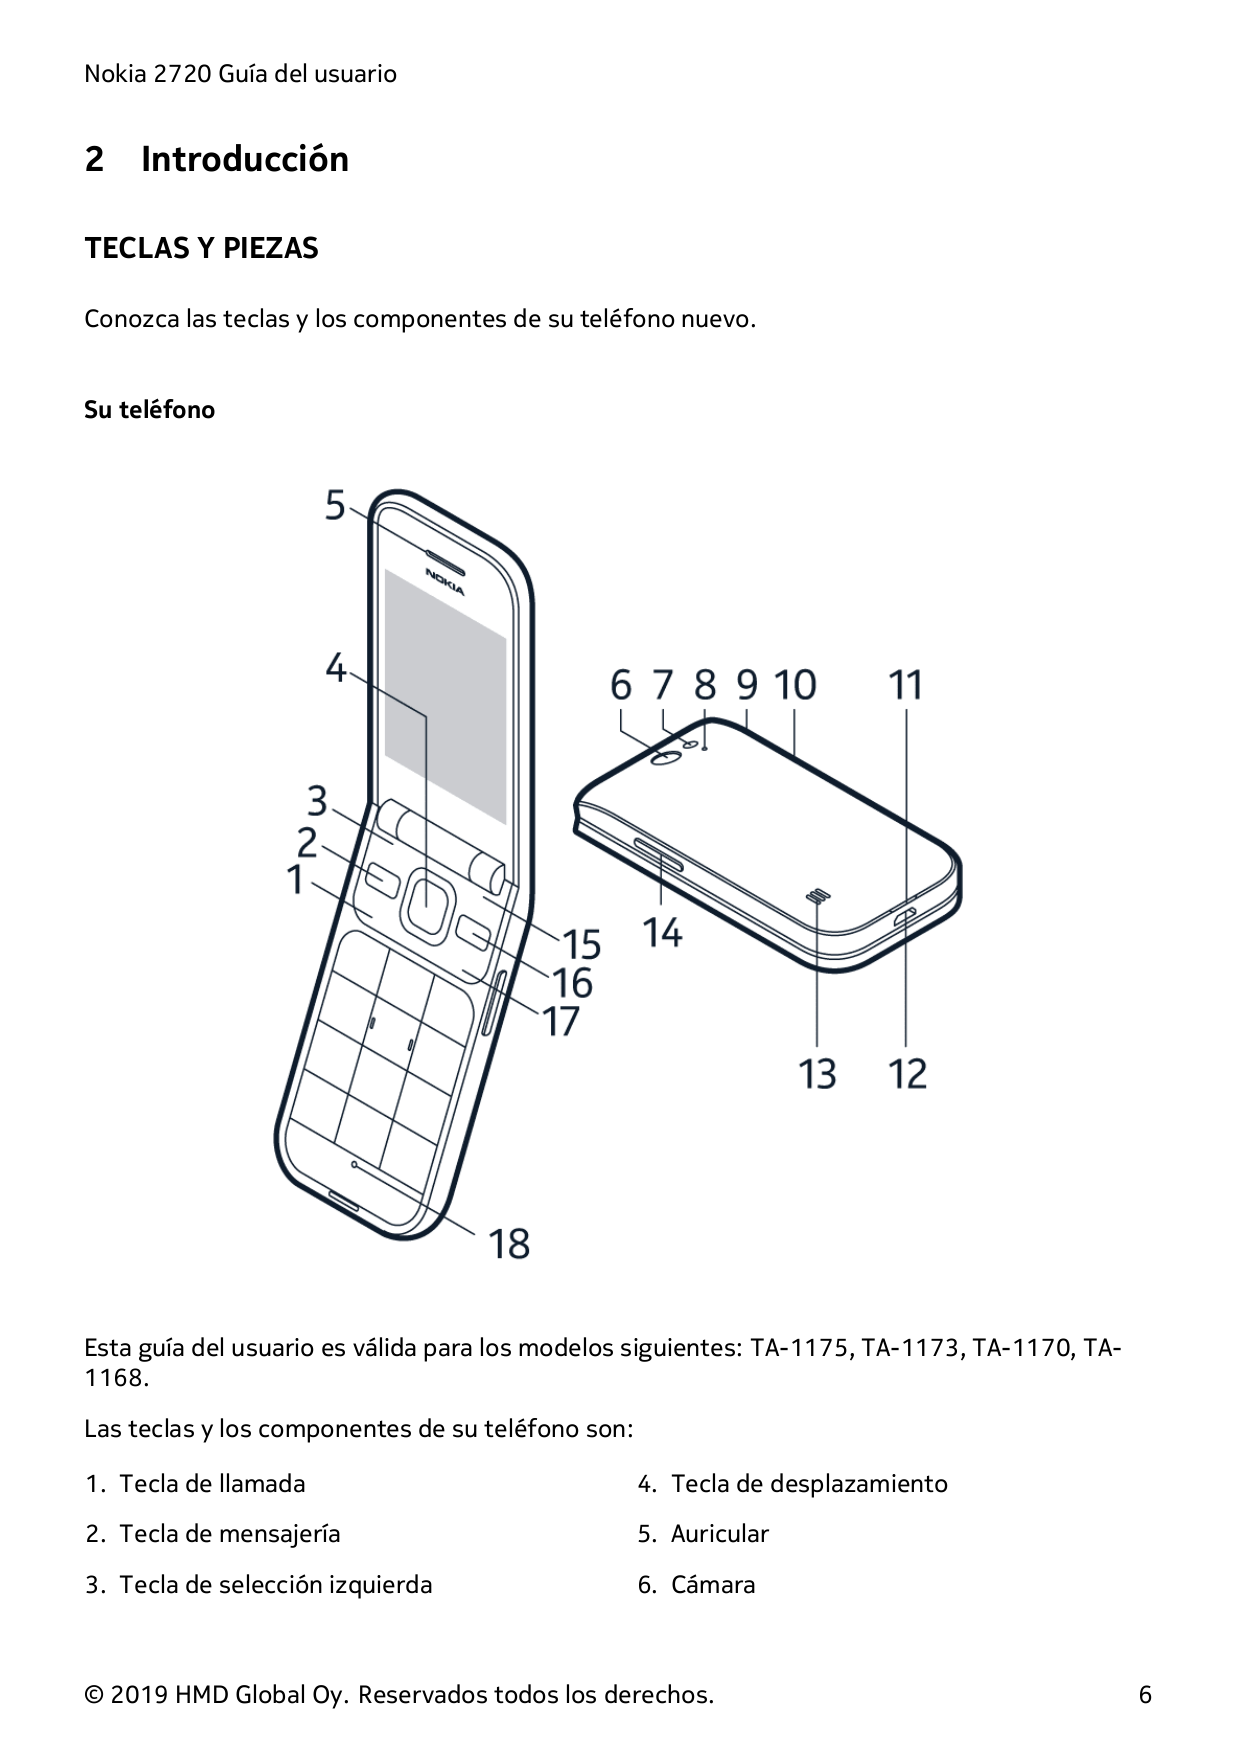 Nokia 2720 Guía del usuario2IntroducciónTECLAS Y PIEZASConozca las teclas y los componentes de su teléfono nuevo.Su teléfonoEsta